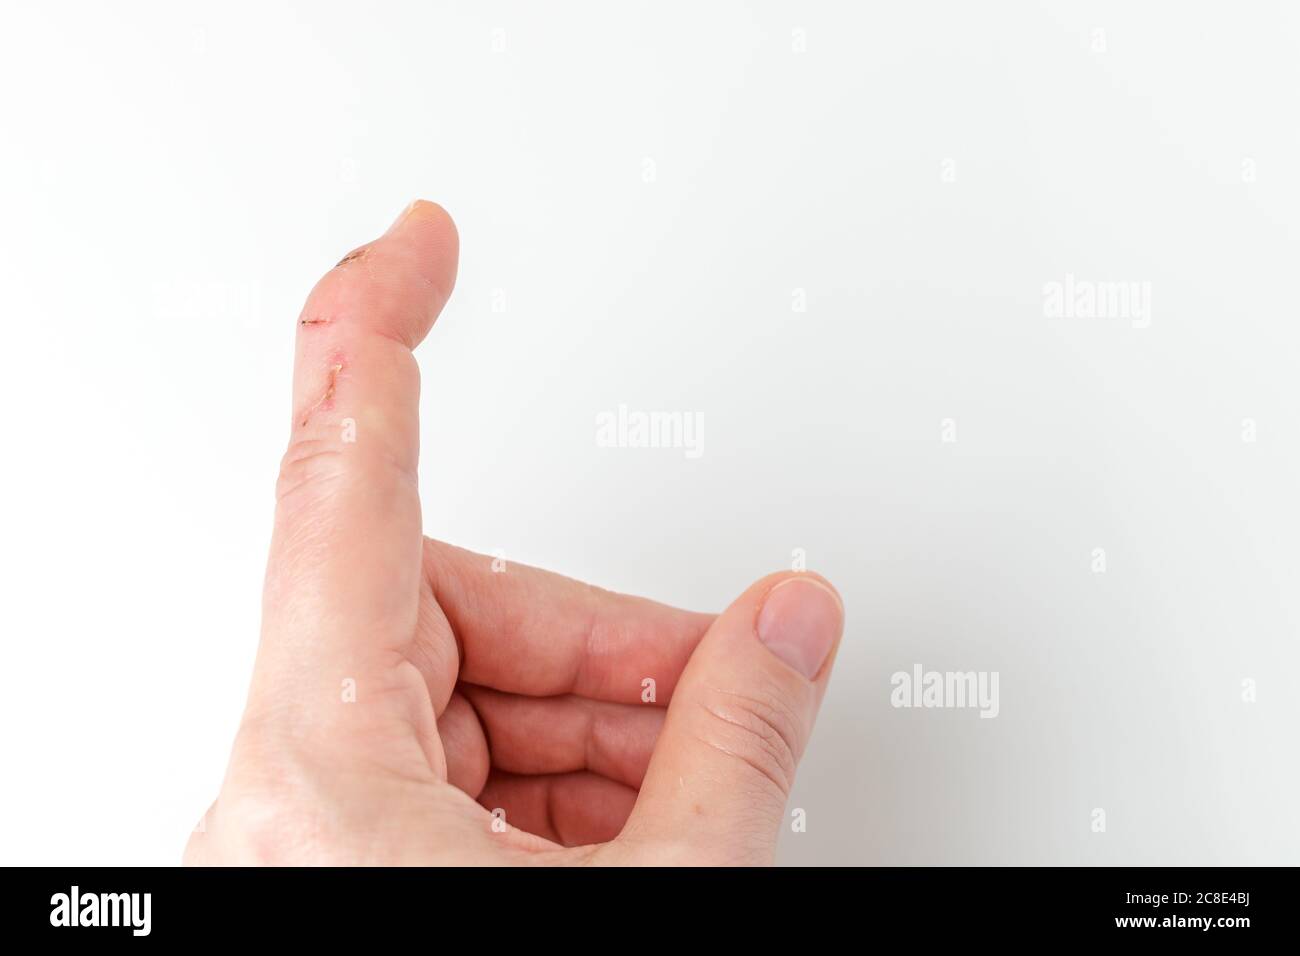 Zeigefinger mit einer Dehnungssehnenverletzung schneiden, Hammerfinger,  Fingerspitze nach unten beugen, während der Rest des Fingers gerade  bleiben, Deformität im letzten Phalangealknochen, nicht abknicken können  Stockfotografie - Alamy